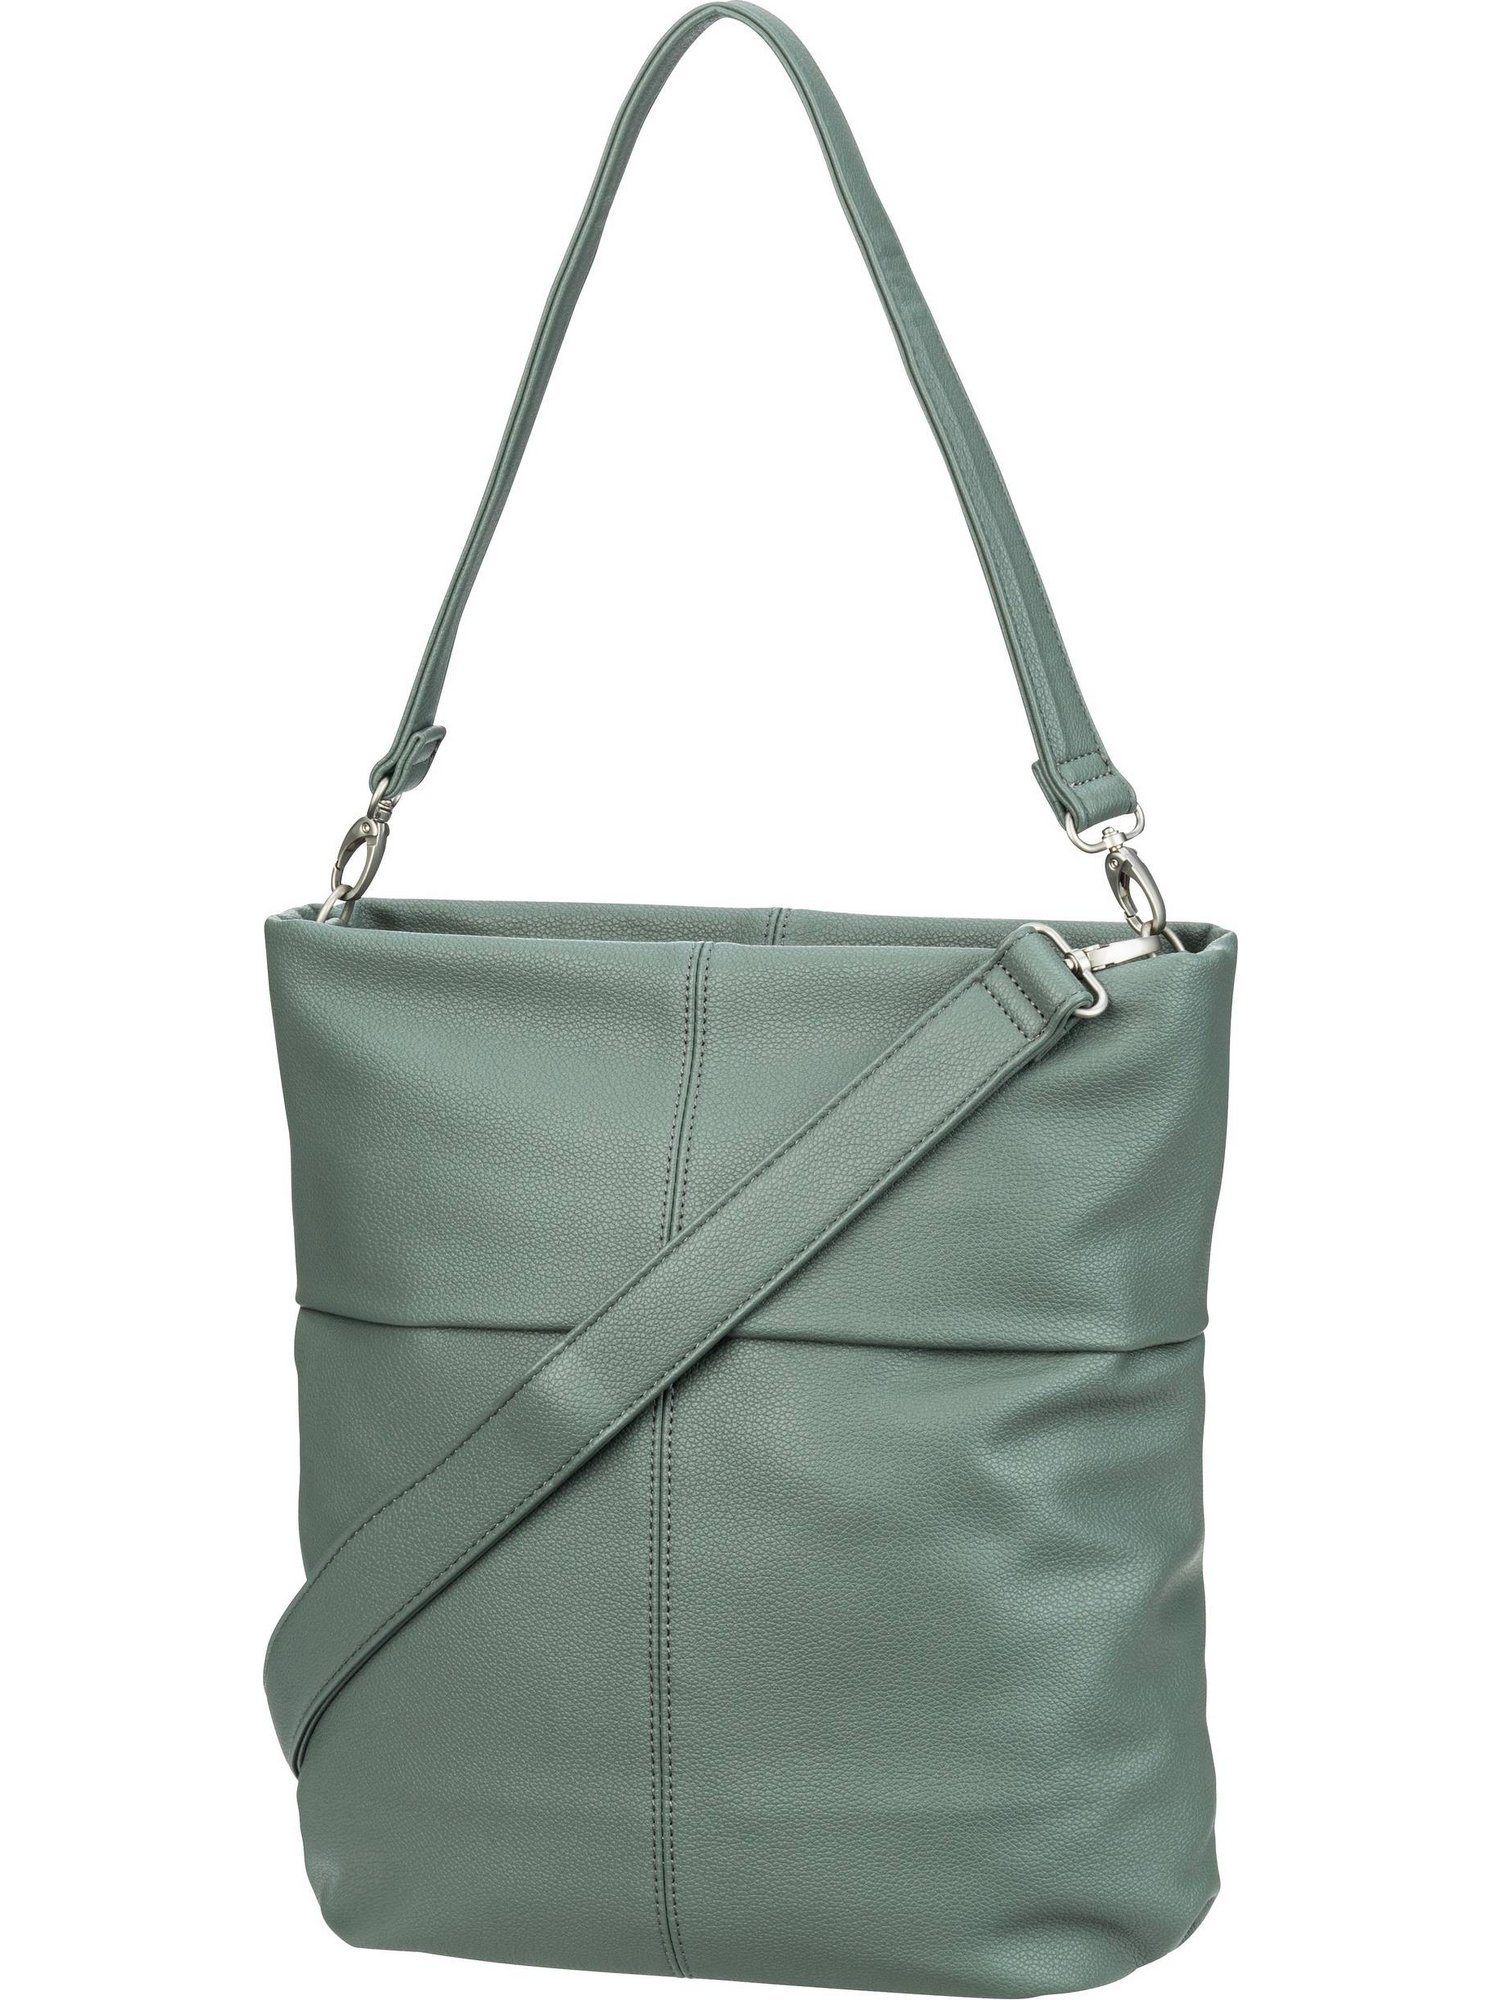 M12, Hobo Mademoiselle Zwei Handtasche Bag Eucalyptus